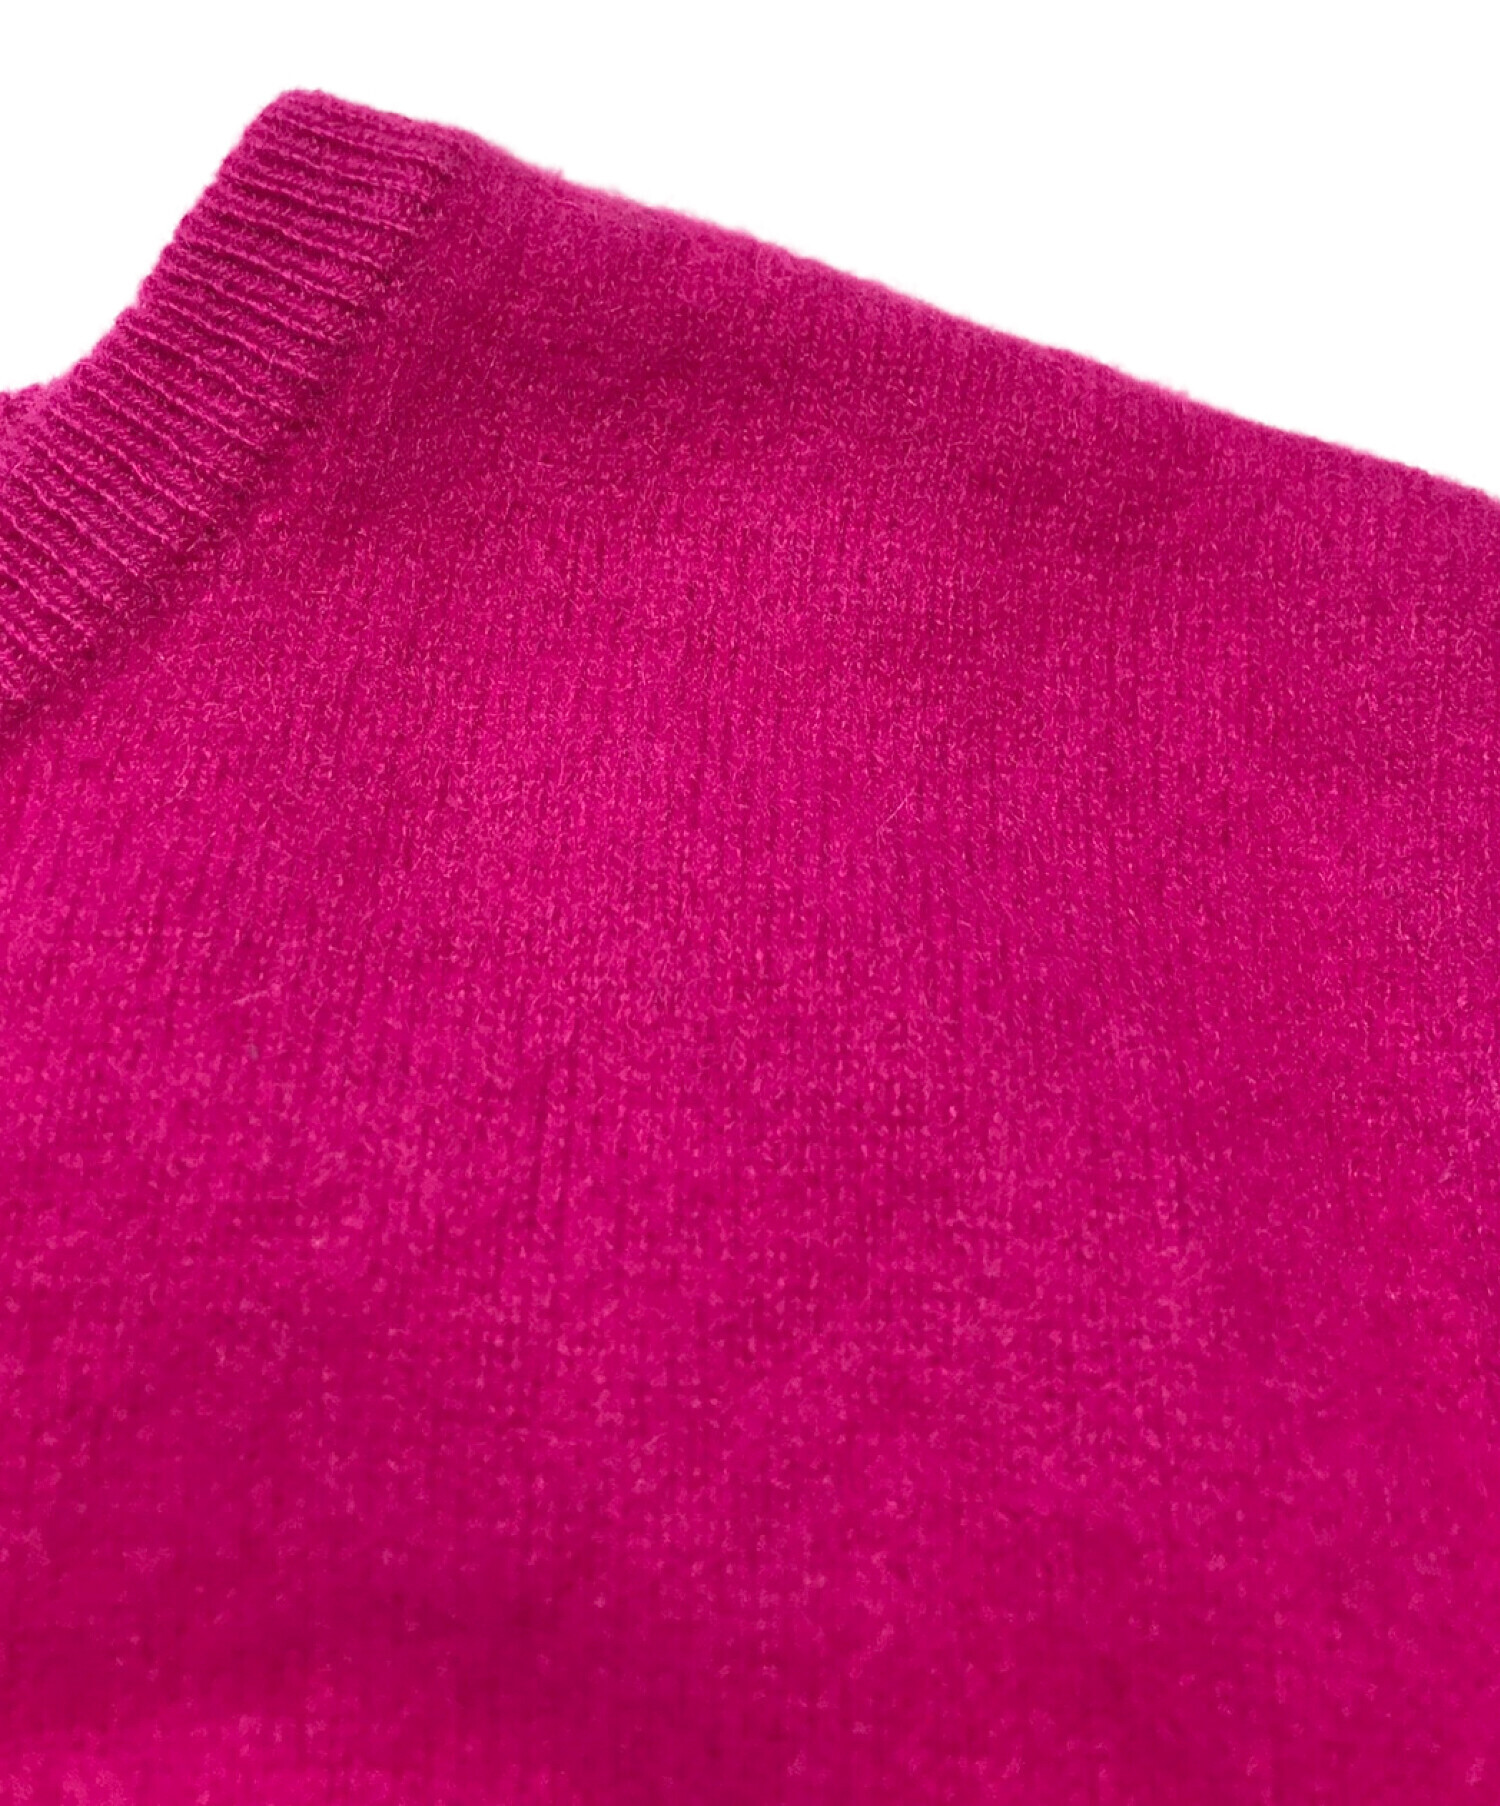 KOLOR (カラー) Uneven パッチ セーター/アンイーブンパッチセーター ピンク サイズ:3